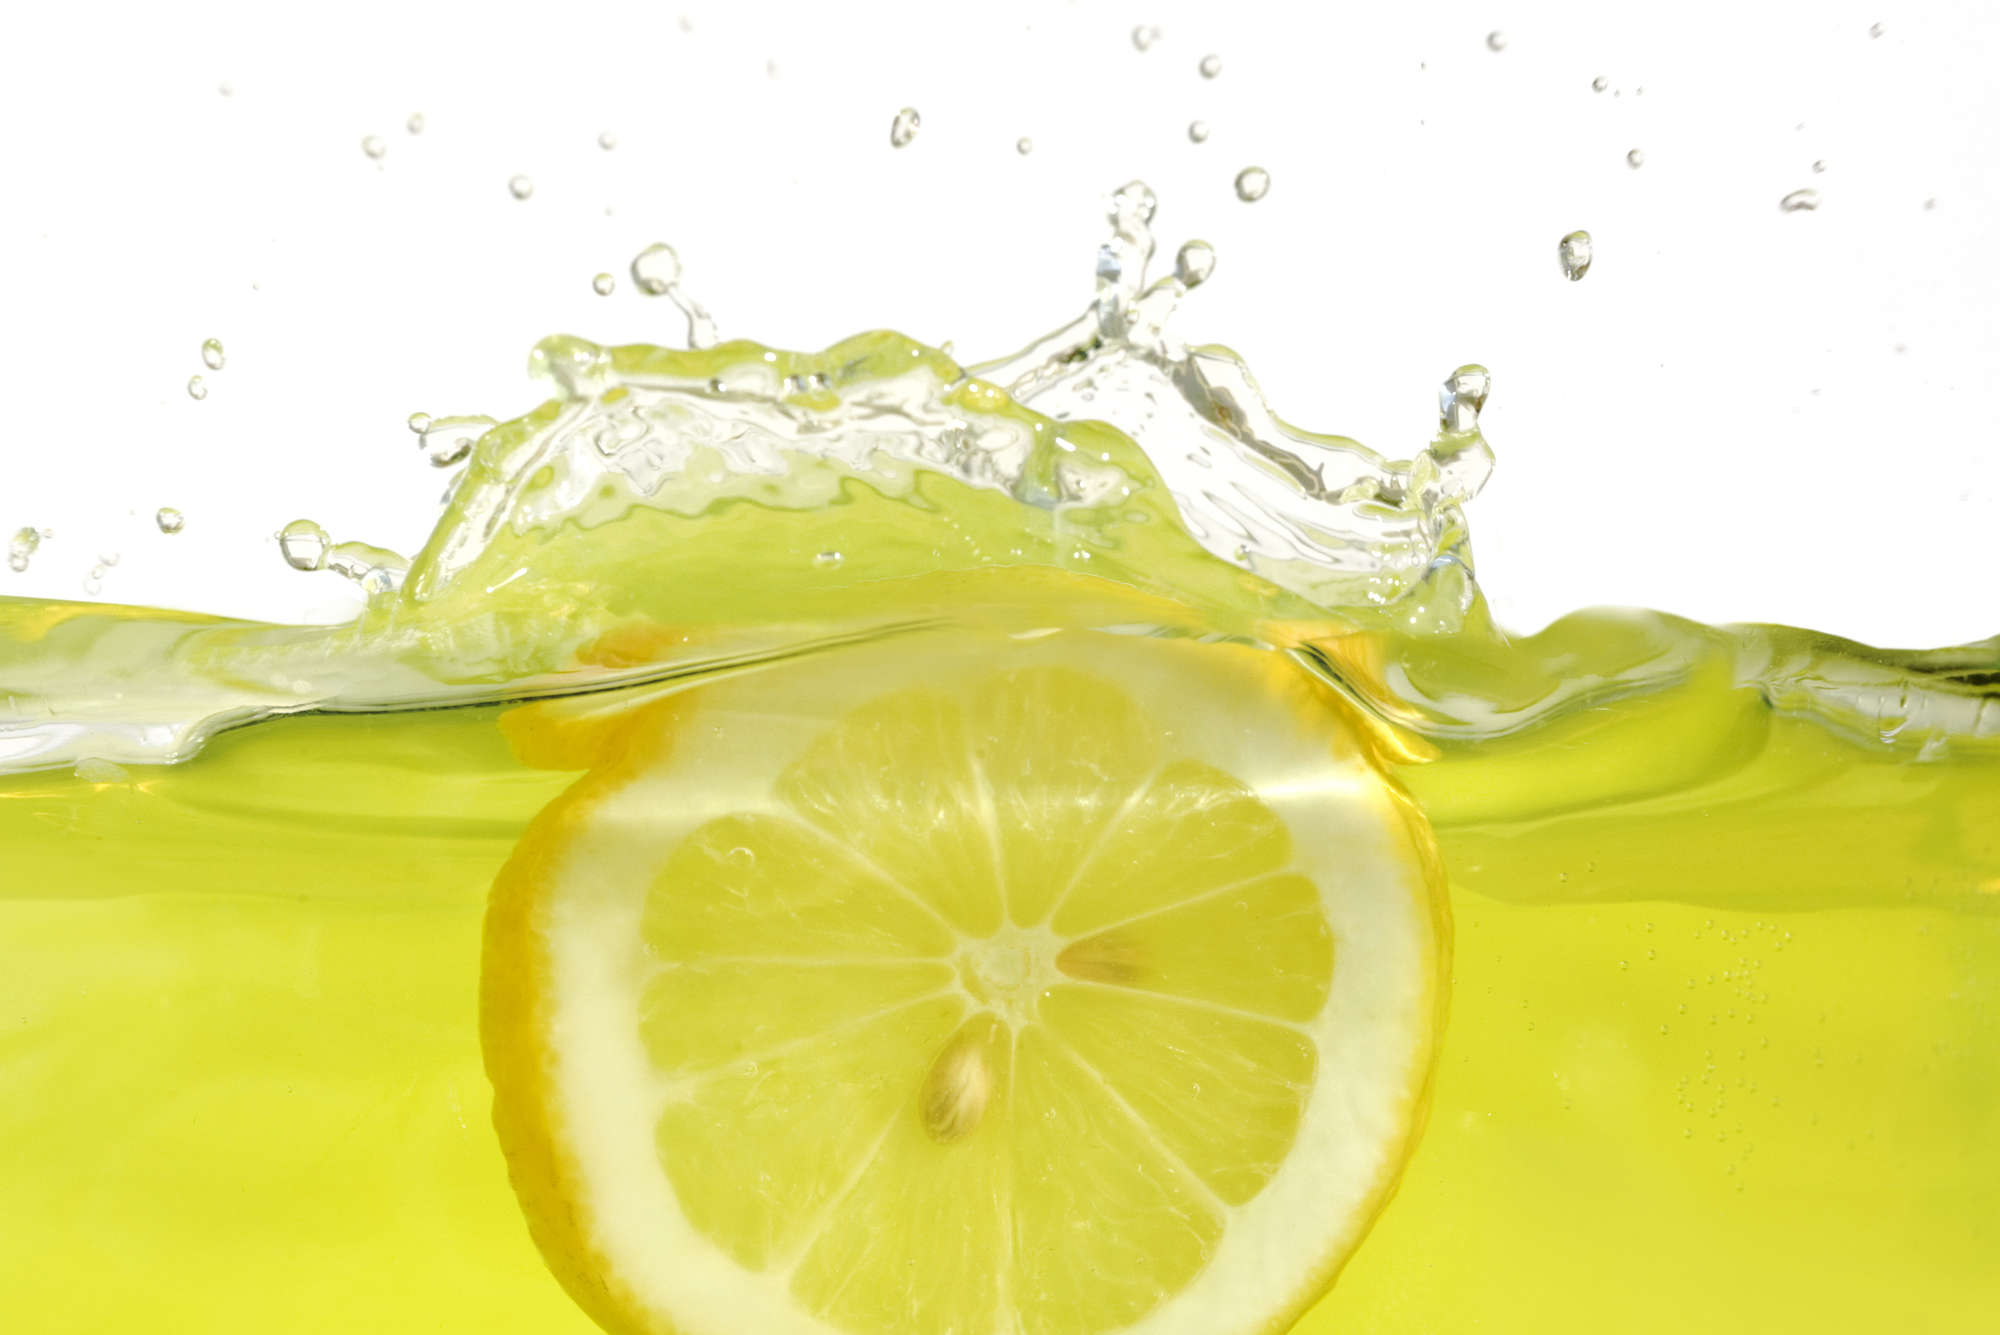             Fototapete Zitrone im Wasser – Strukturiertes Vlies
        